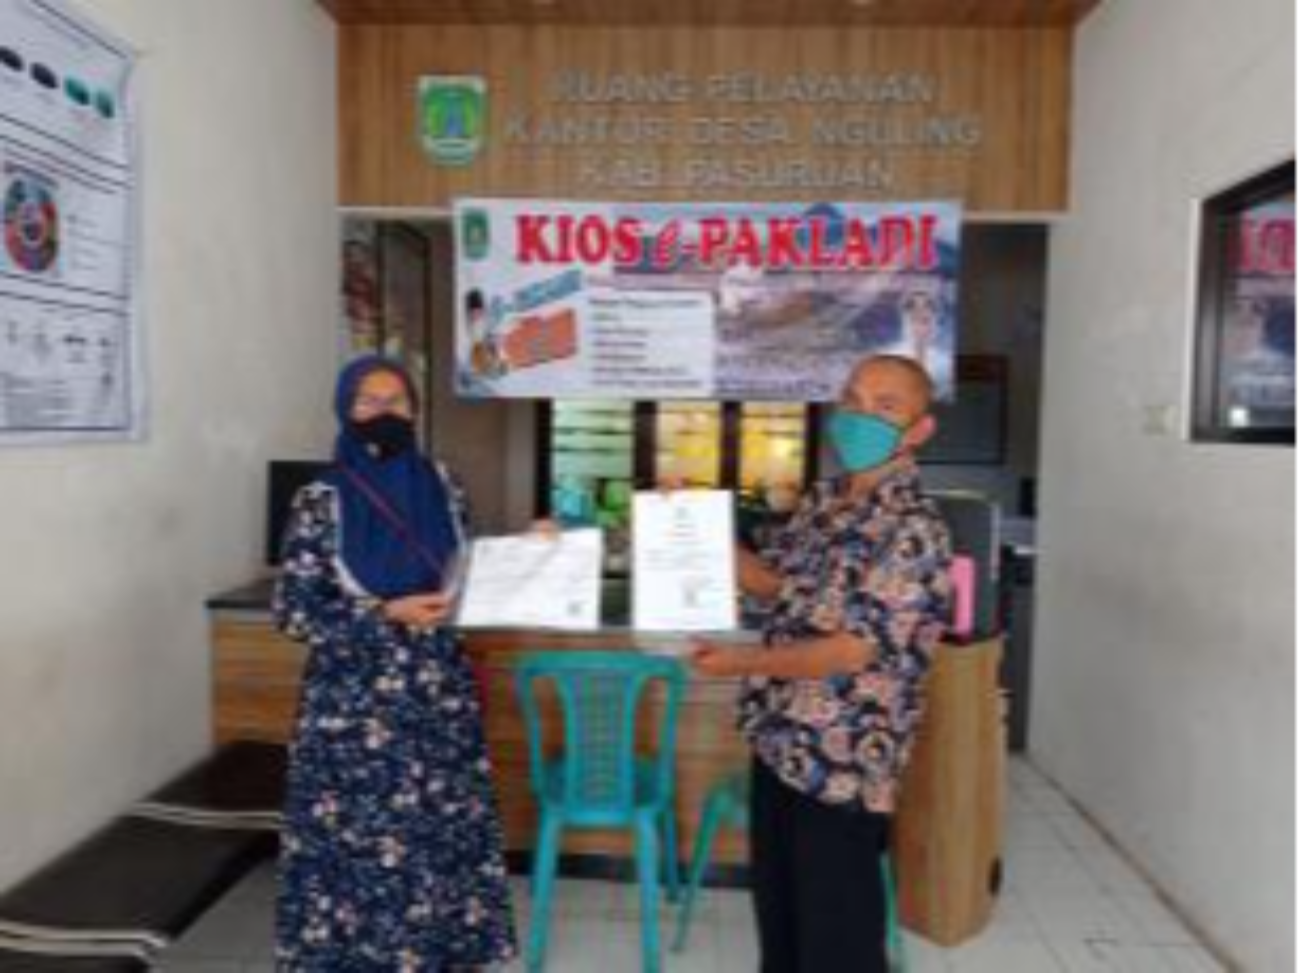 Kios E-Pak Ladi yang dibangun untuk memberikan layanan bagi masyarakat Pasuruan. (Foto: Dok Humas)